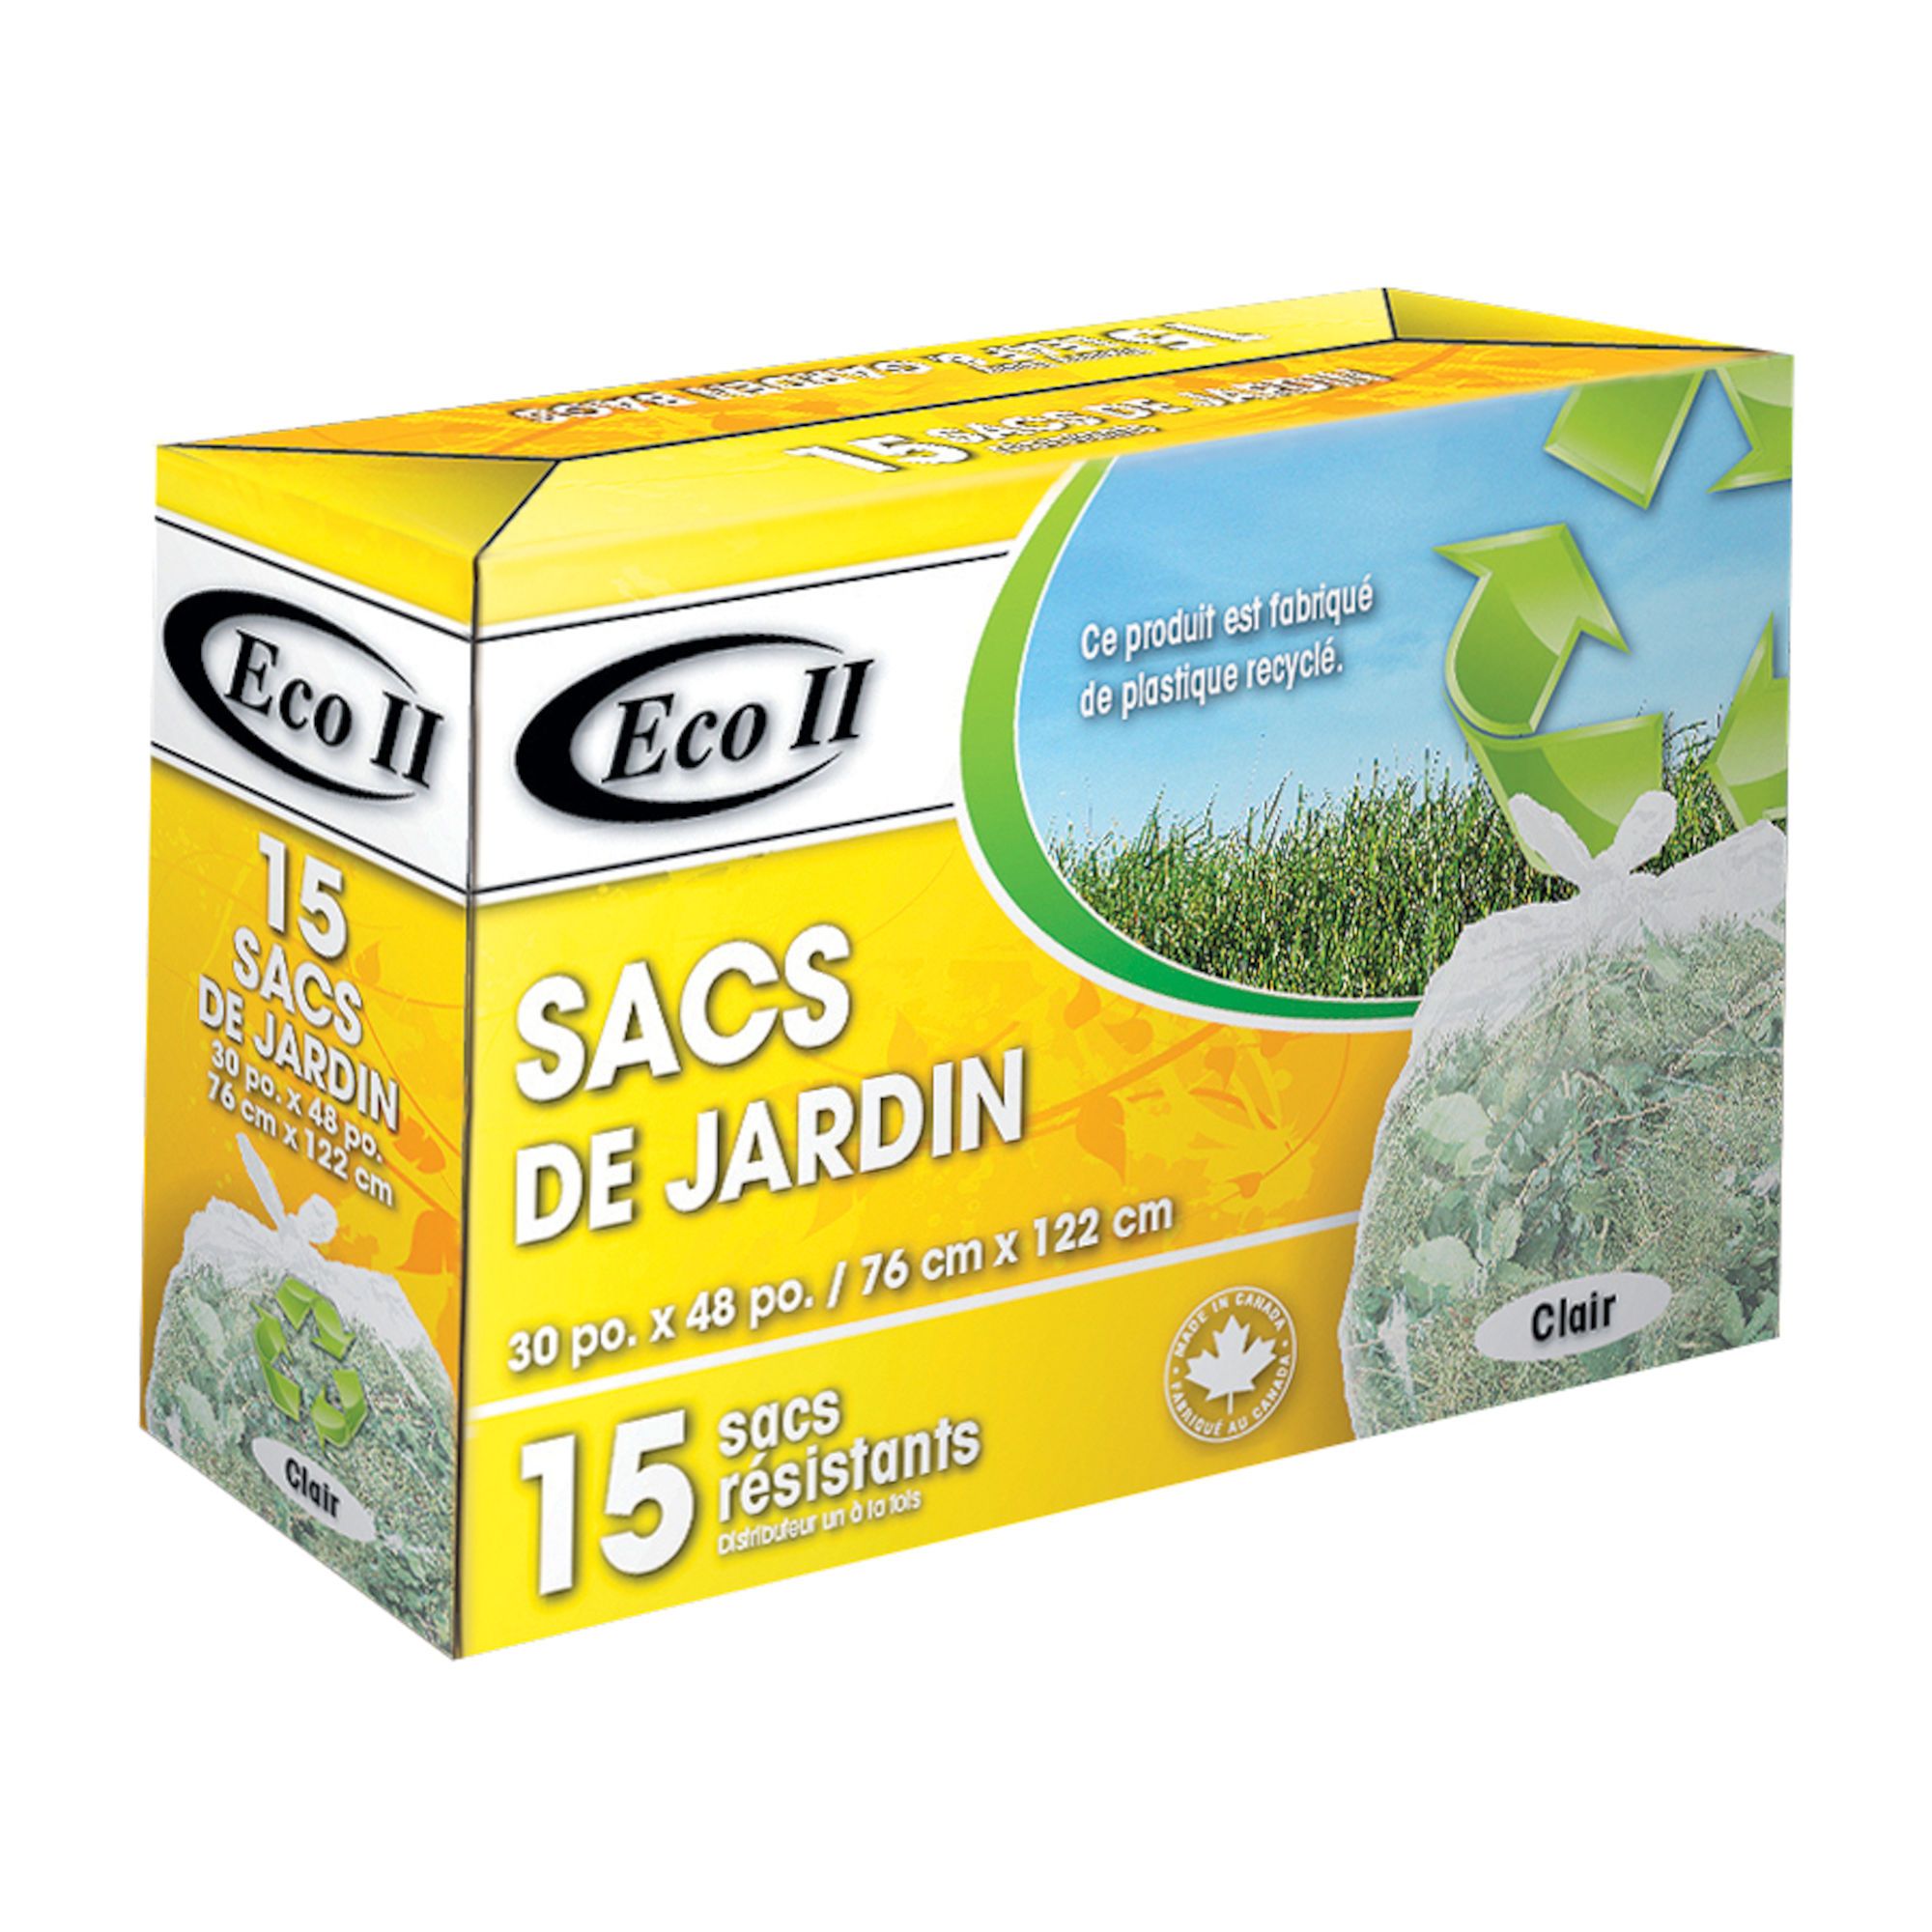 ECO II Sacs pour jardin/feuilles, paquet de 15, 121 l 30015-2